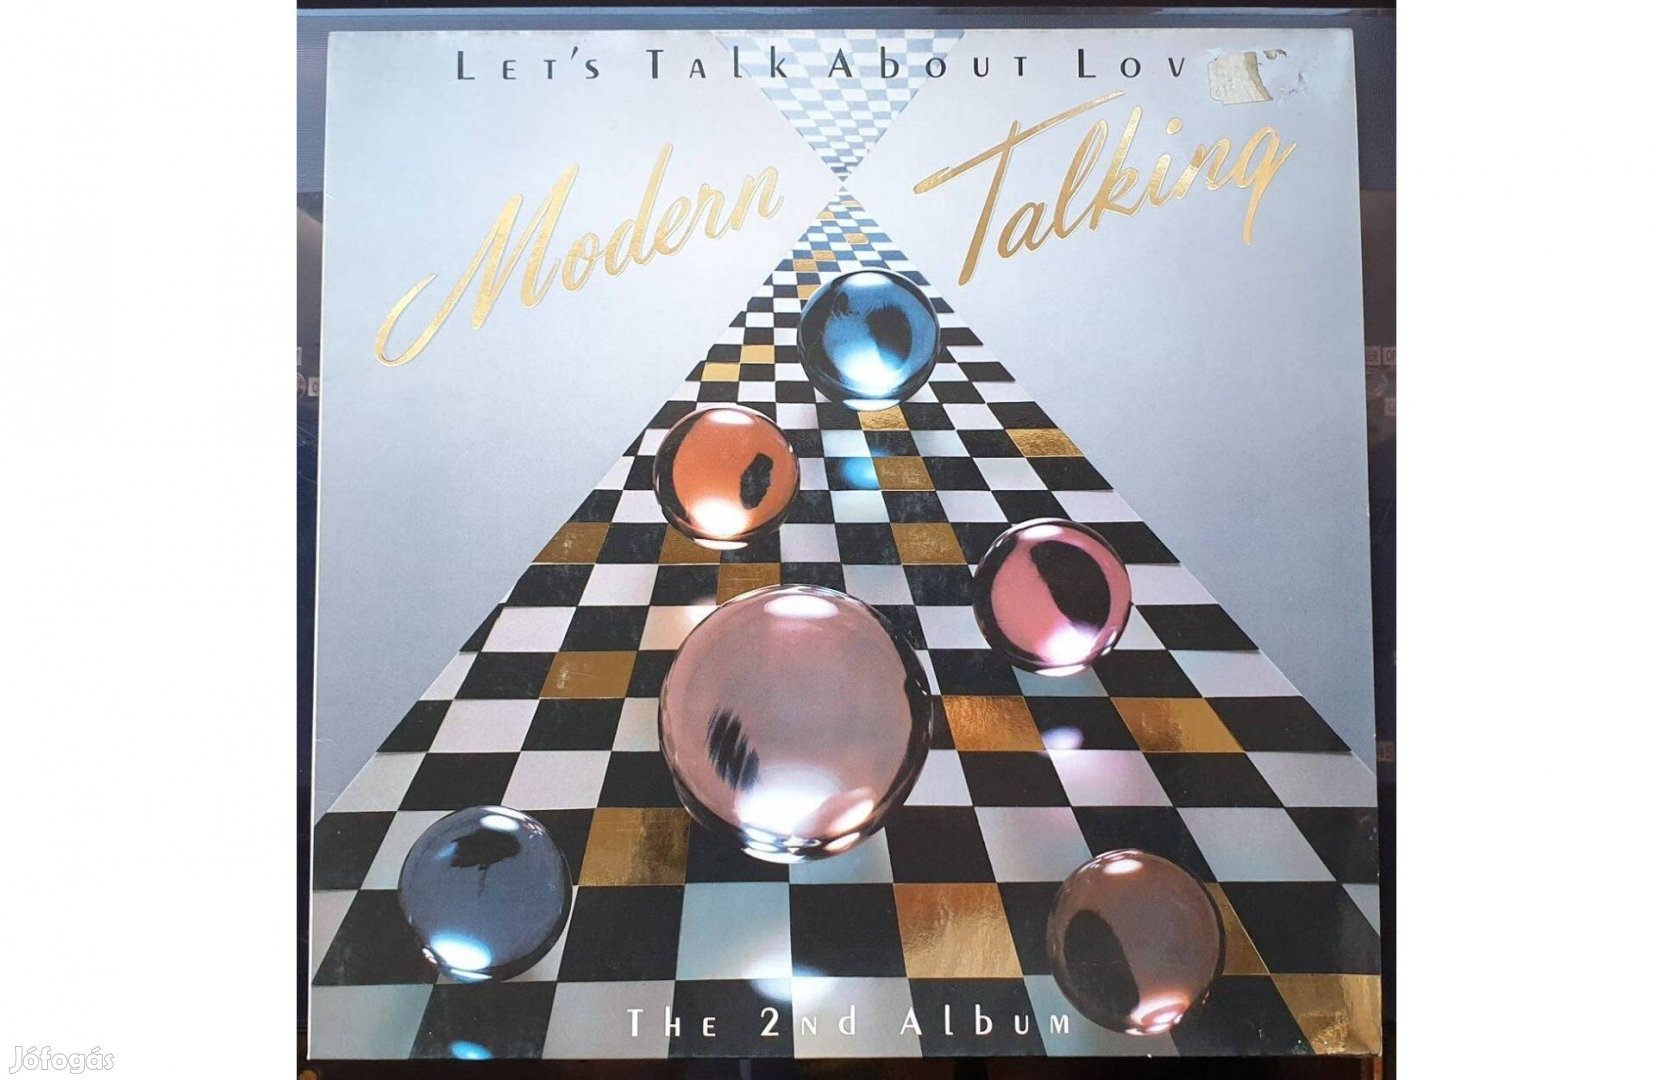 Modern Talking - The 2nd Album bakelit hanglemez eladó (1985)